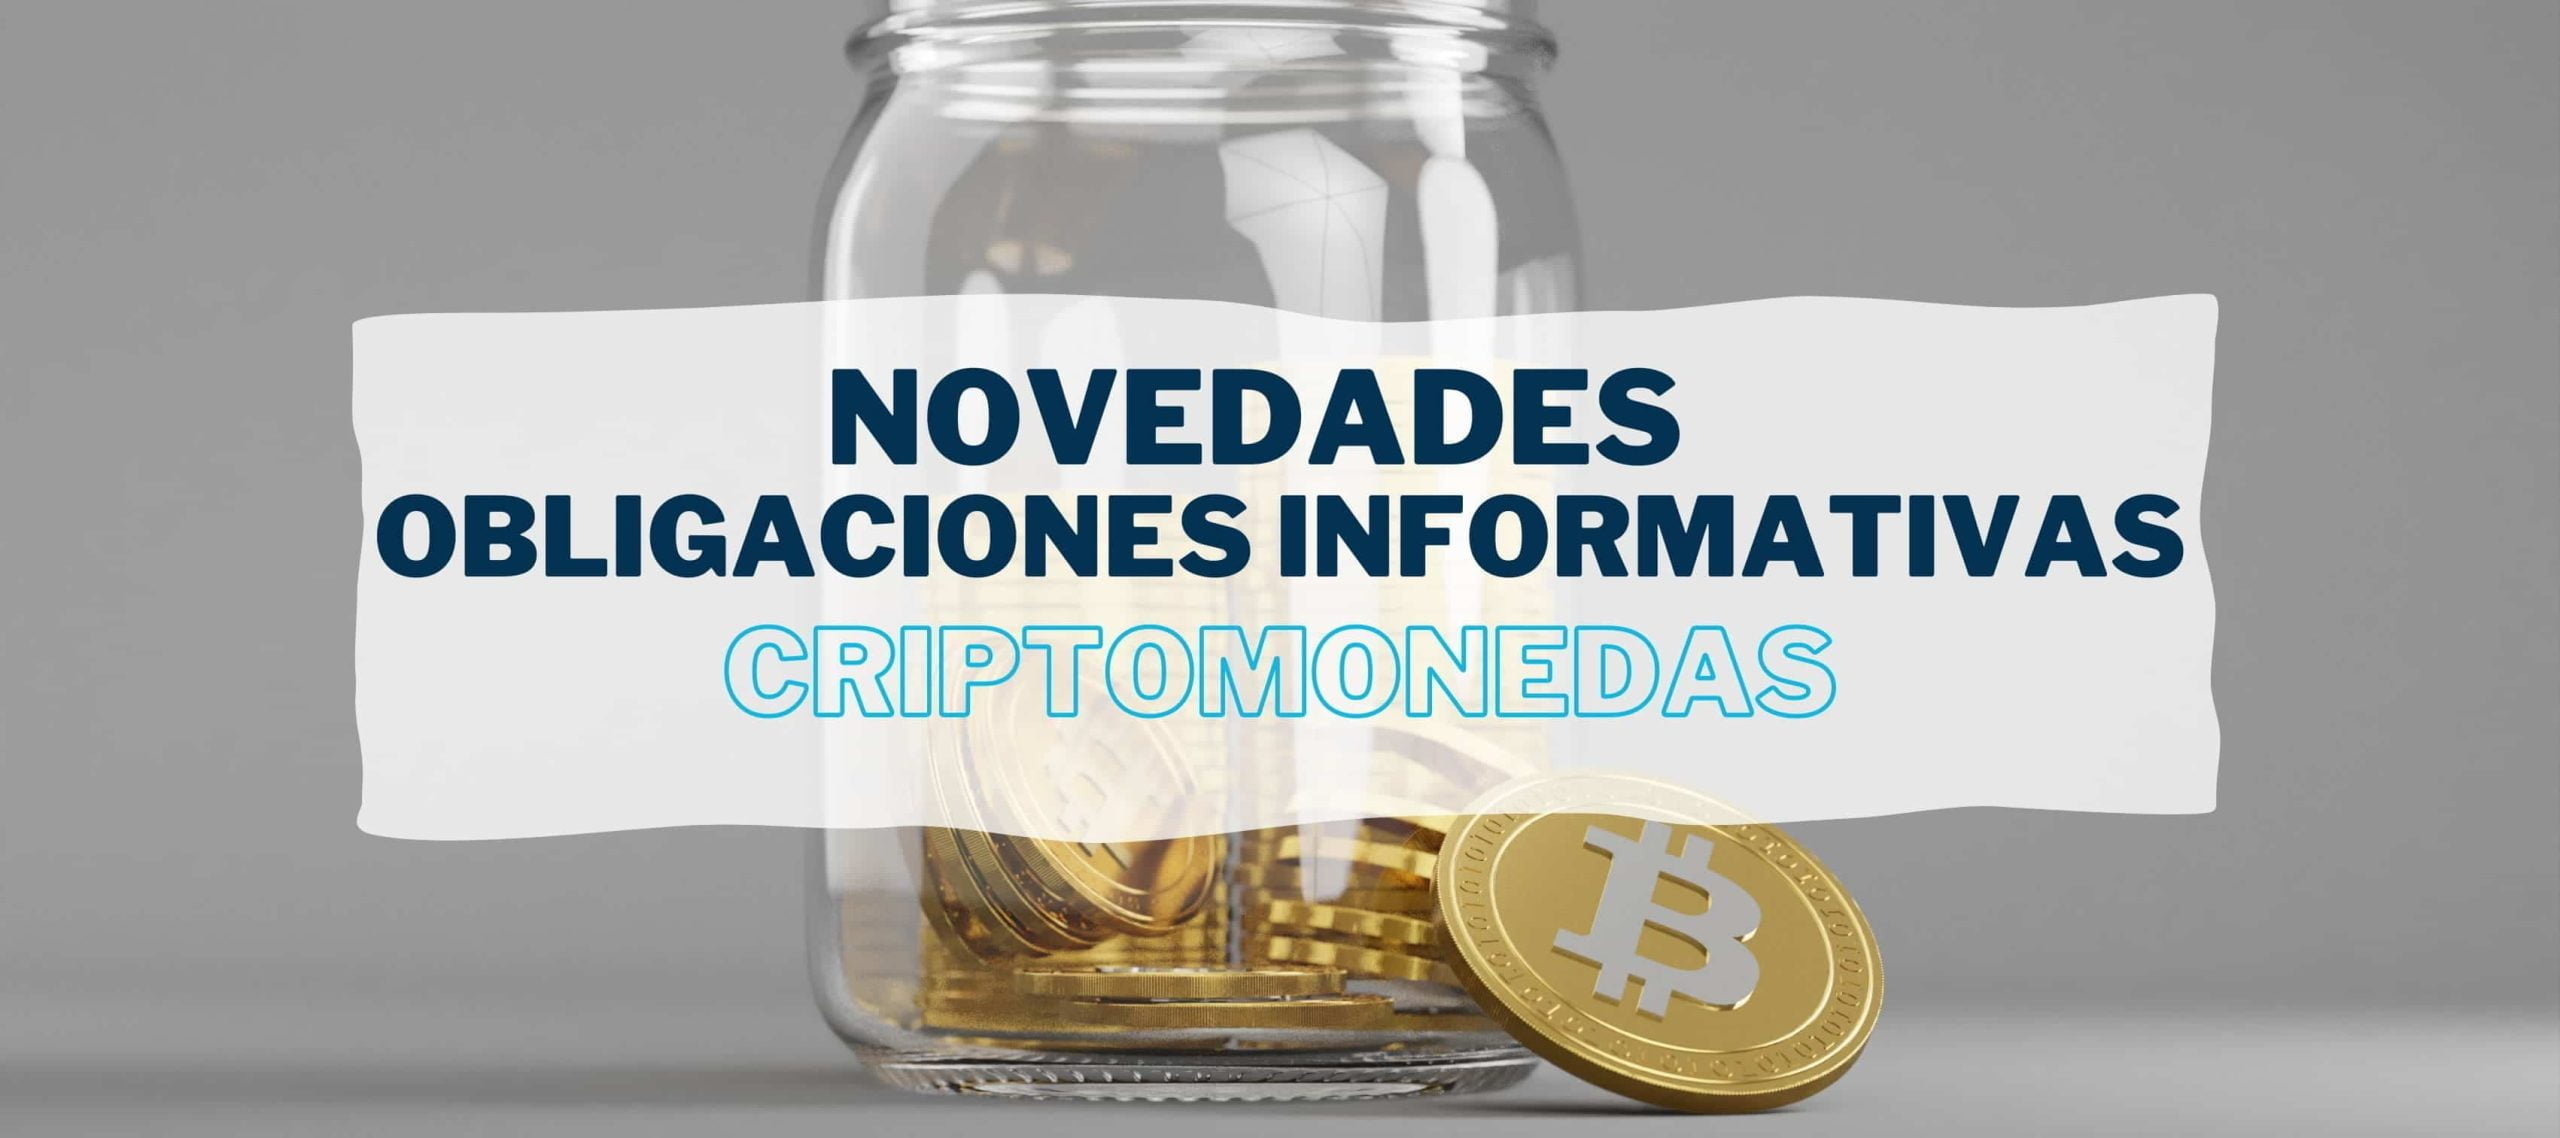 Bote de cristal con monedas virtuales para hablar de la información sobre las criptomonedas y las novedades en las obligaciones informativas desde Iniciativa Fiscal.